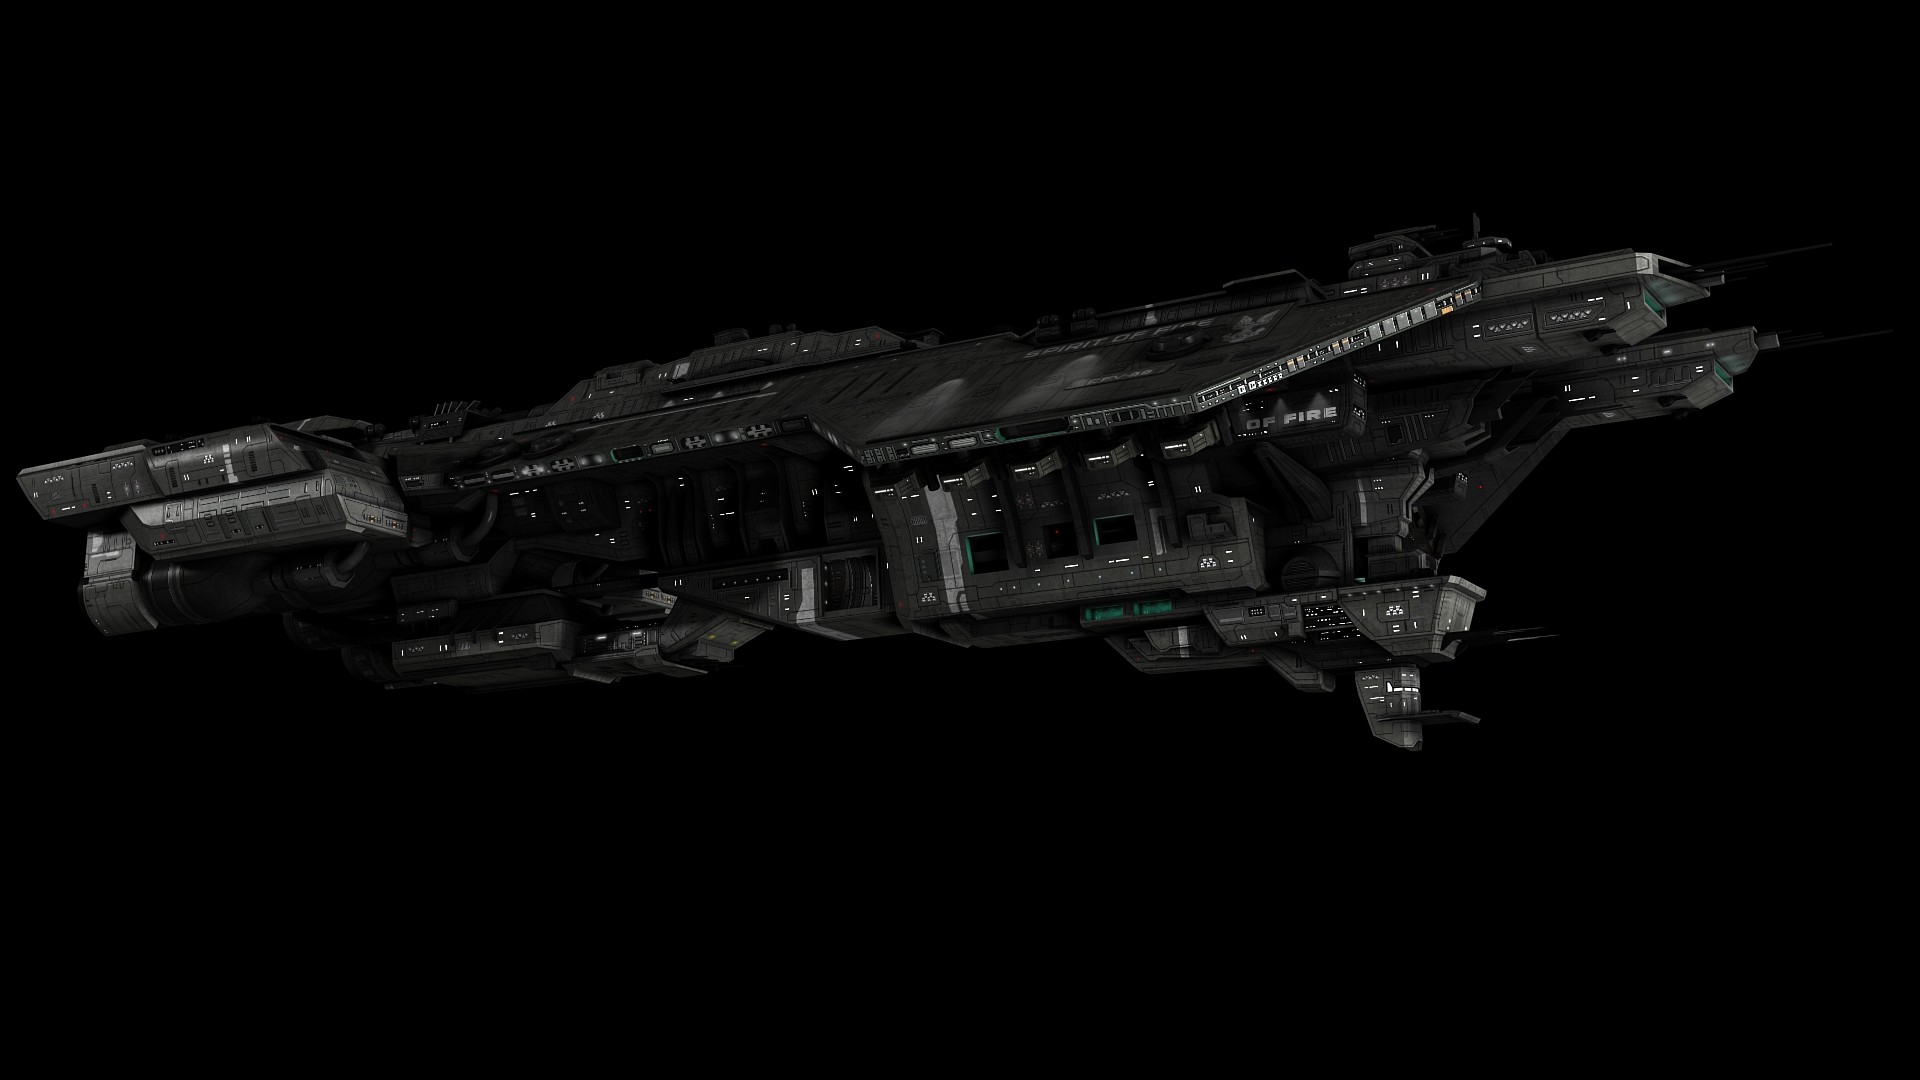 UNSC Phoenix-class assault ship. 